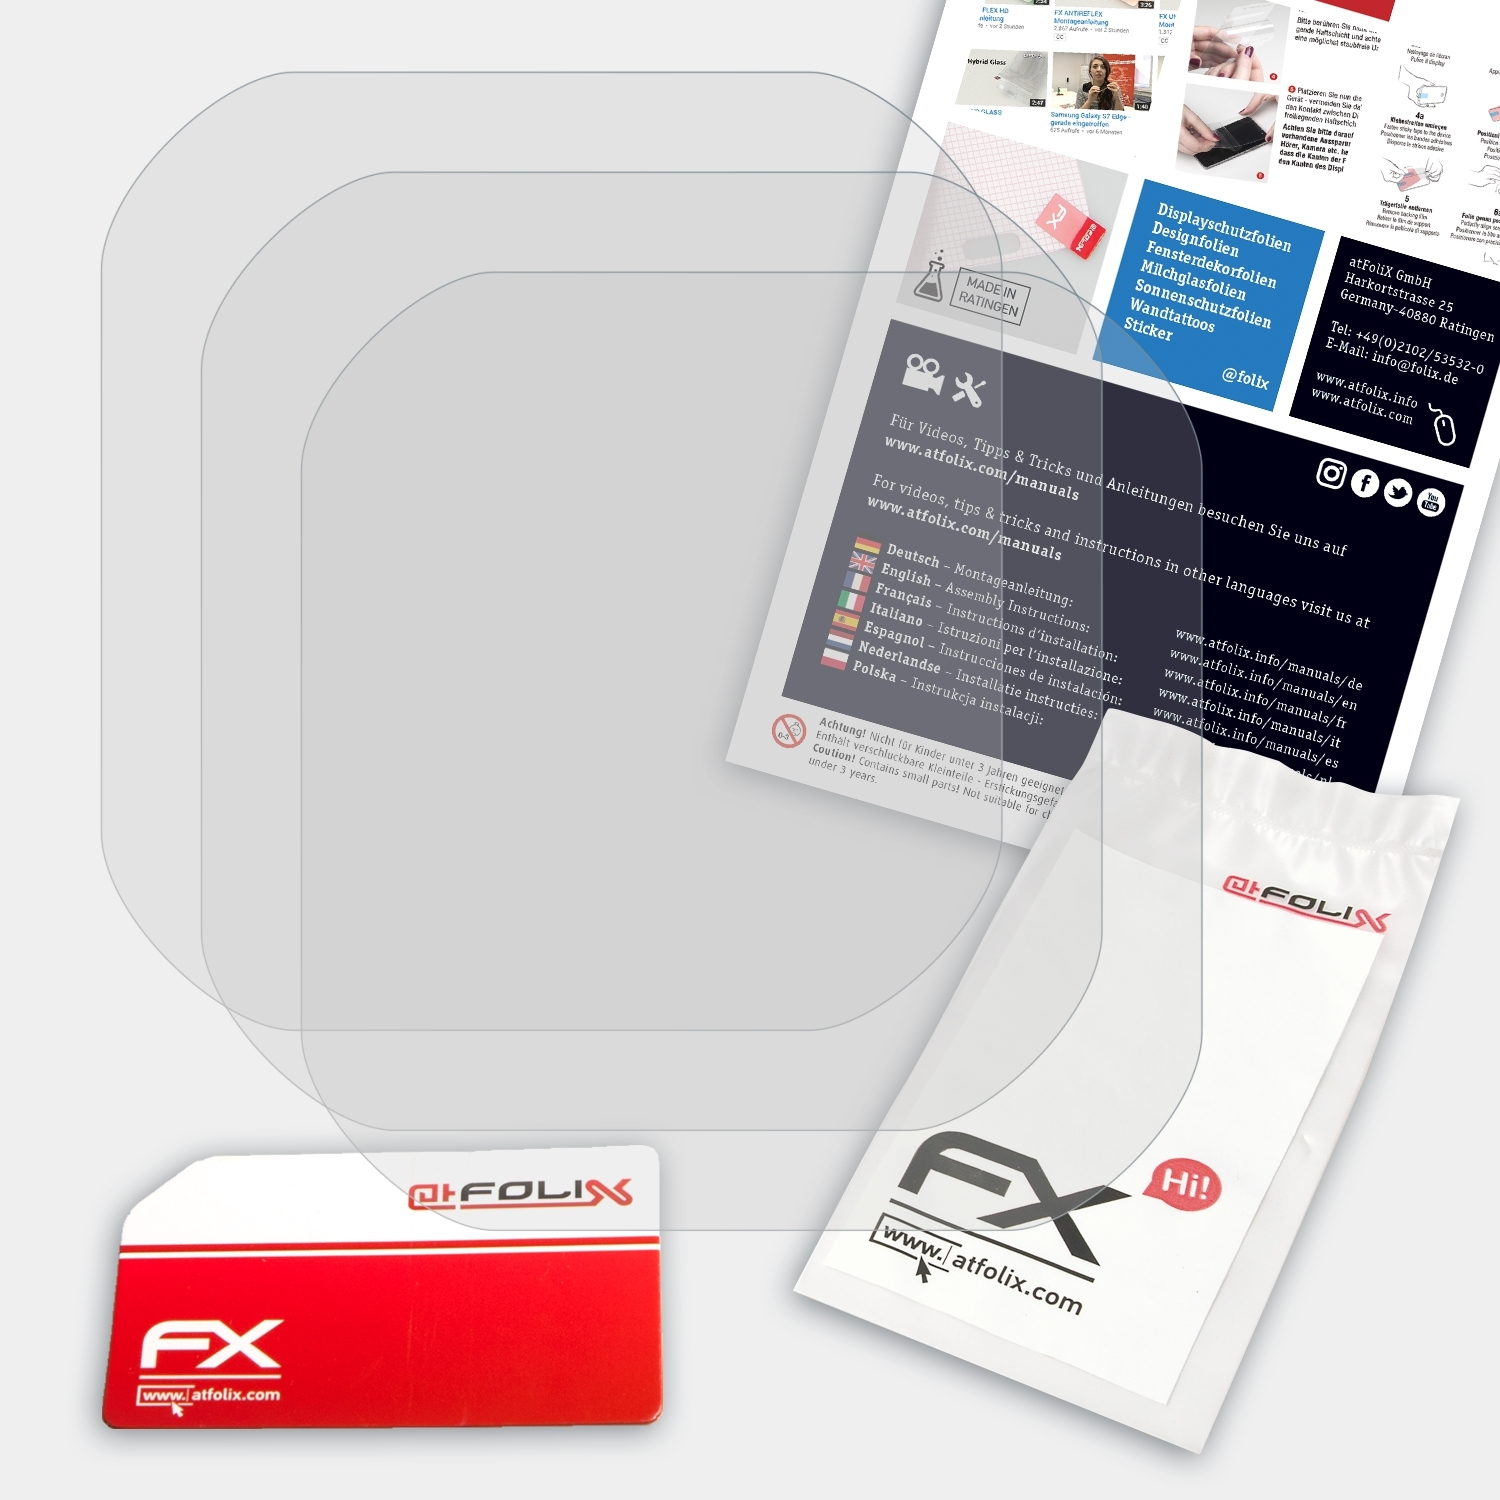 FX-Antireflex ATFOLIX Garmin Displayschutz(für 20/25) 3x Edge